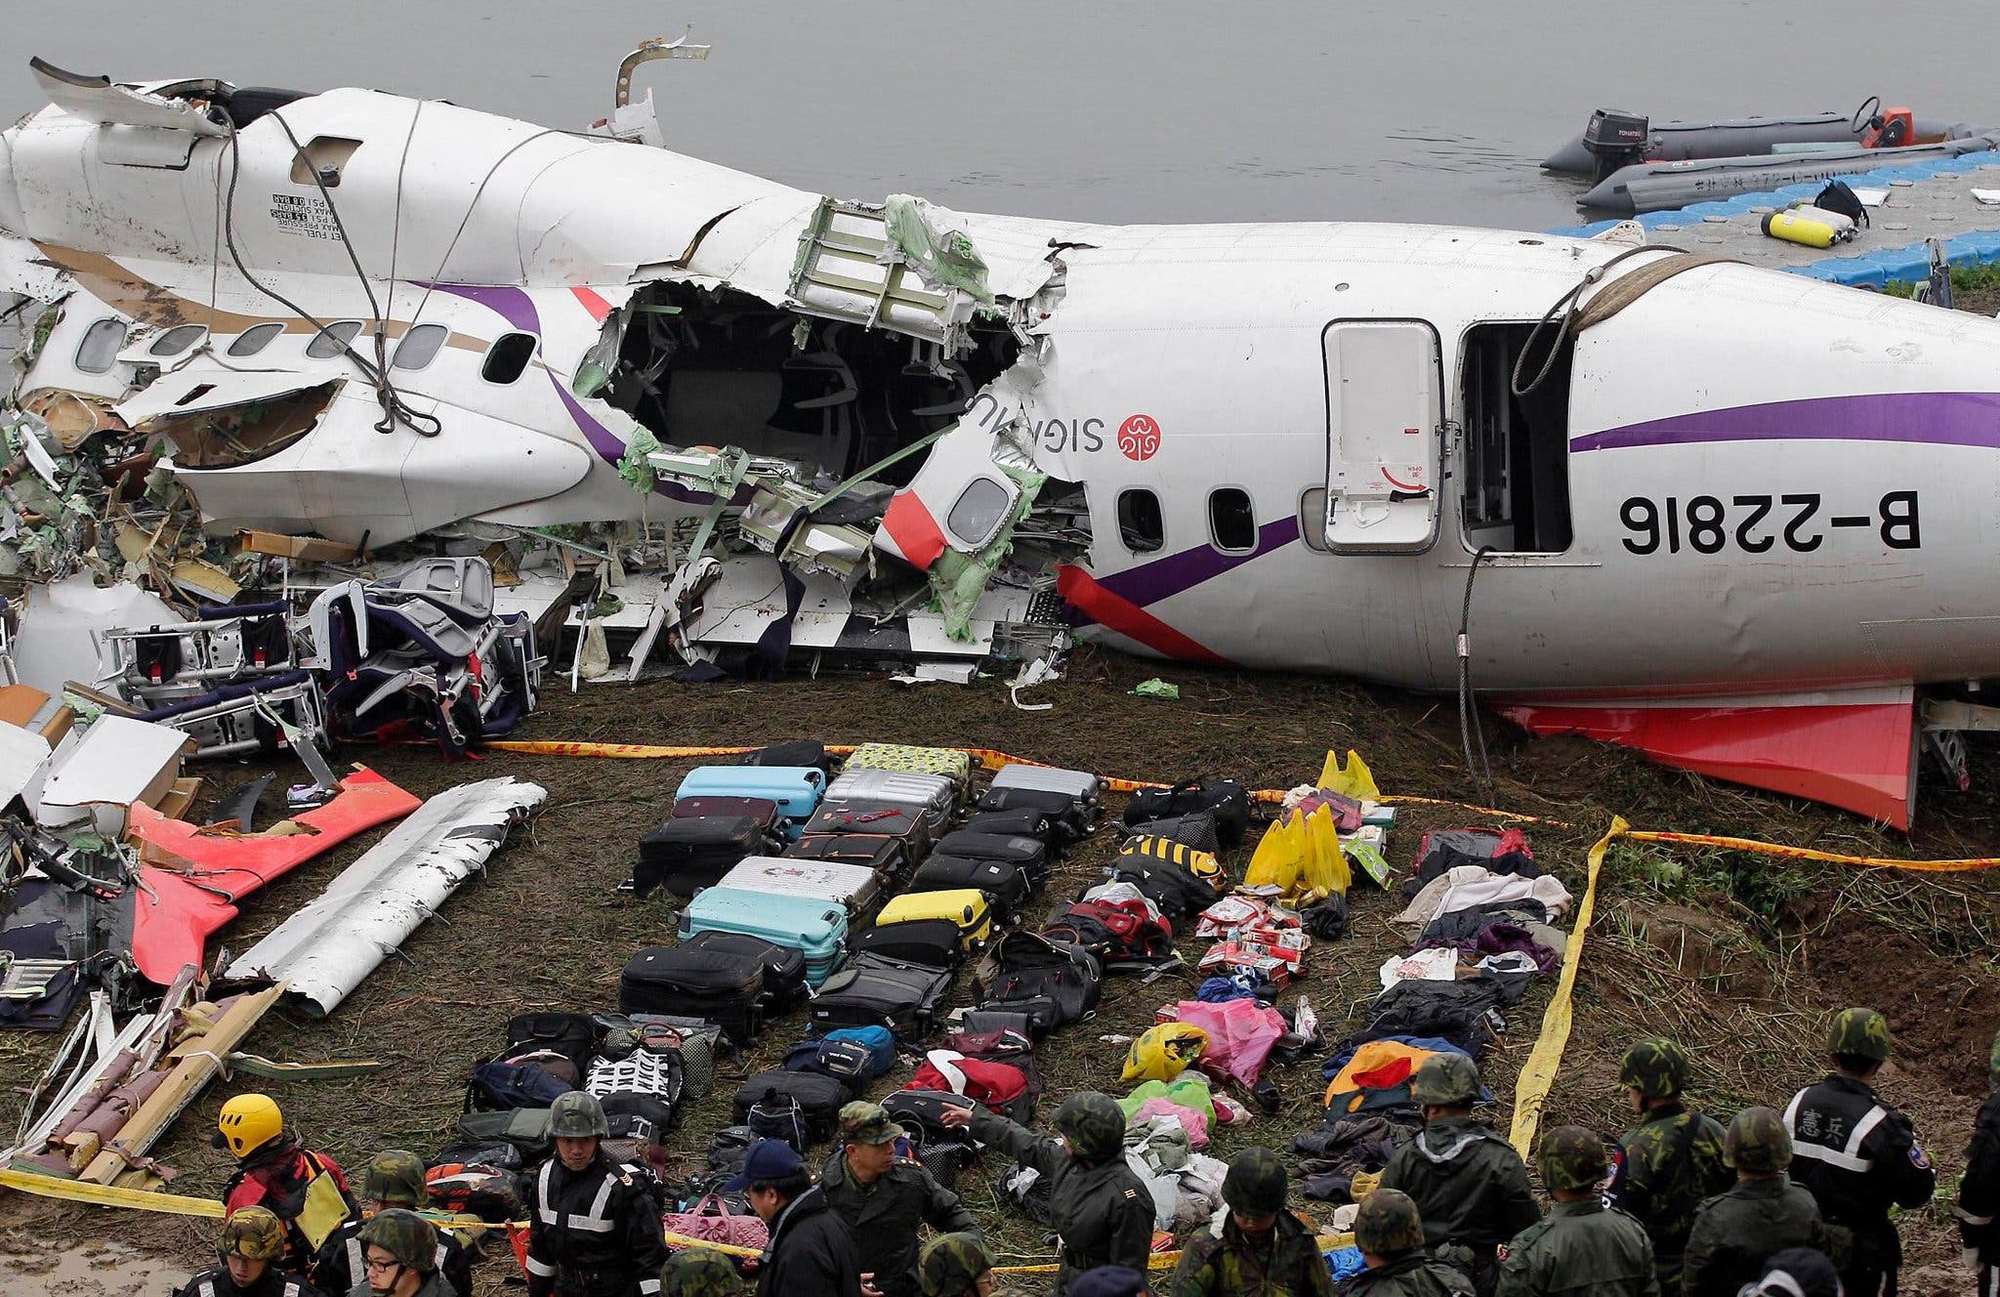 Tắt nhầm động cơ, phi công lái máy bay đâm sầm xuống cầu cao tốc khiến 48 hành khách thiệt mạng tại chỗ- Ảnh 7.